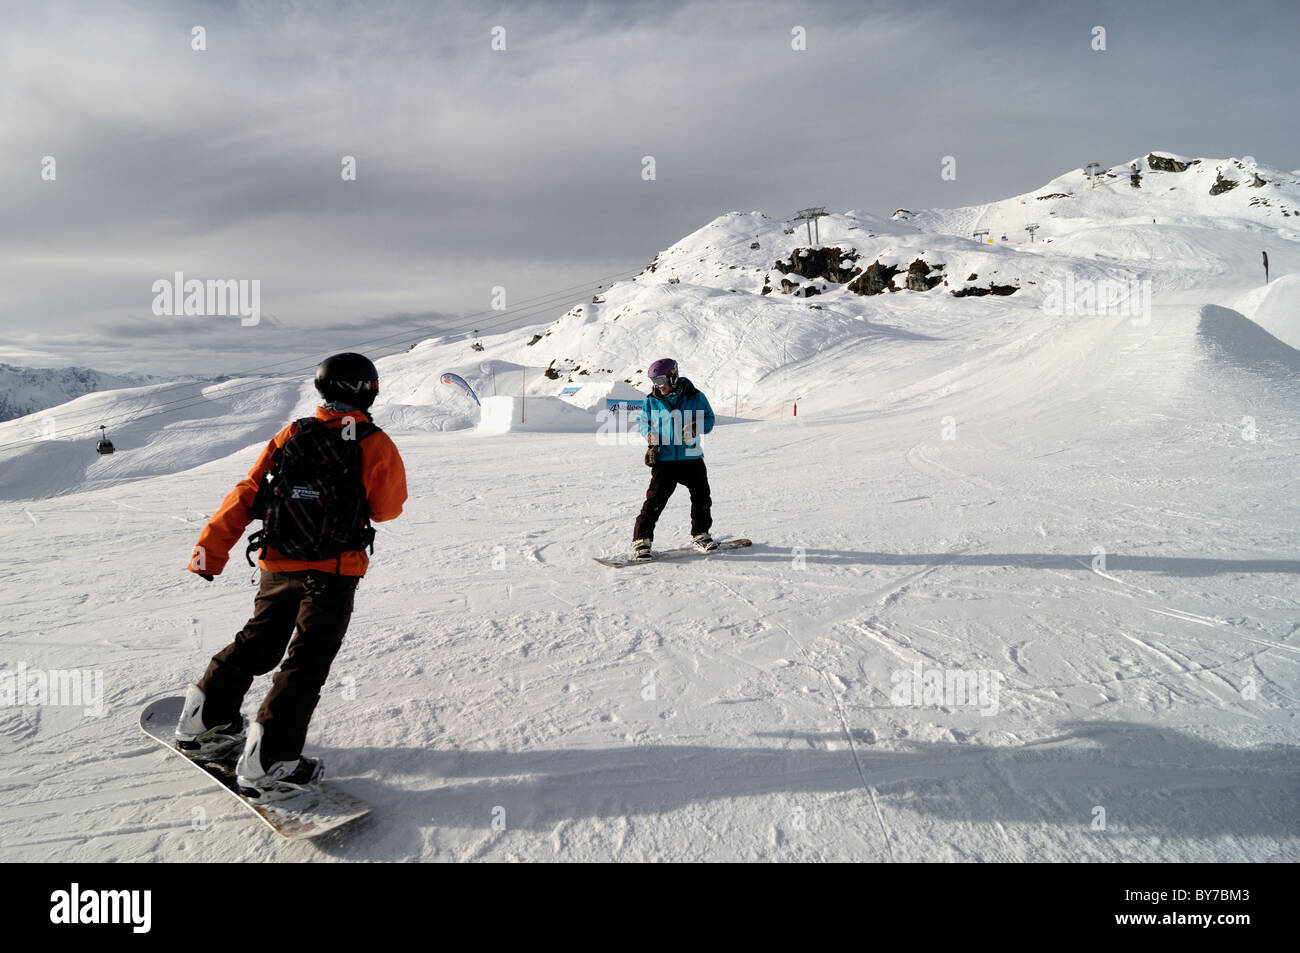 Two snow boarders in Verbier, Switzerland. Stock Photo